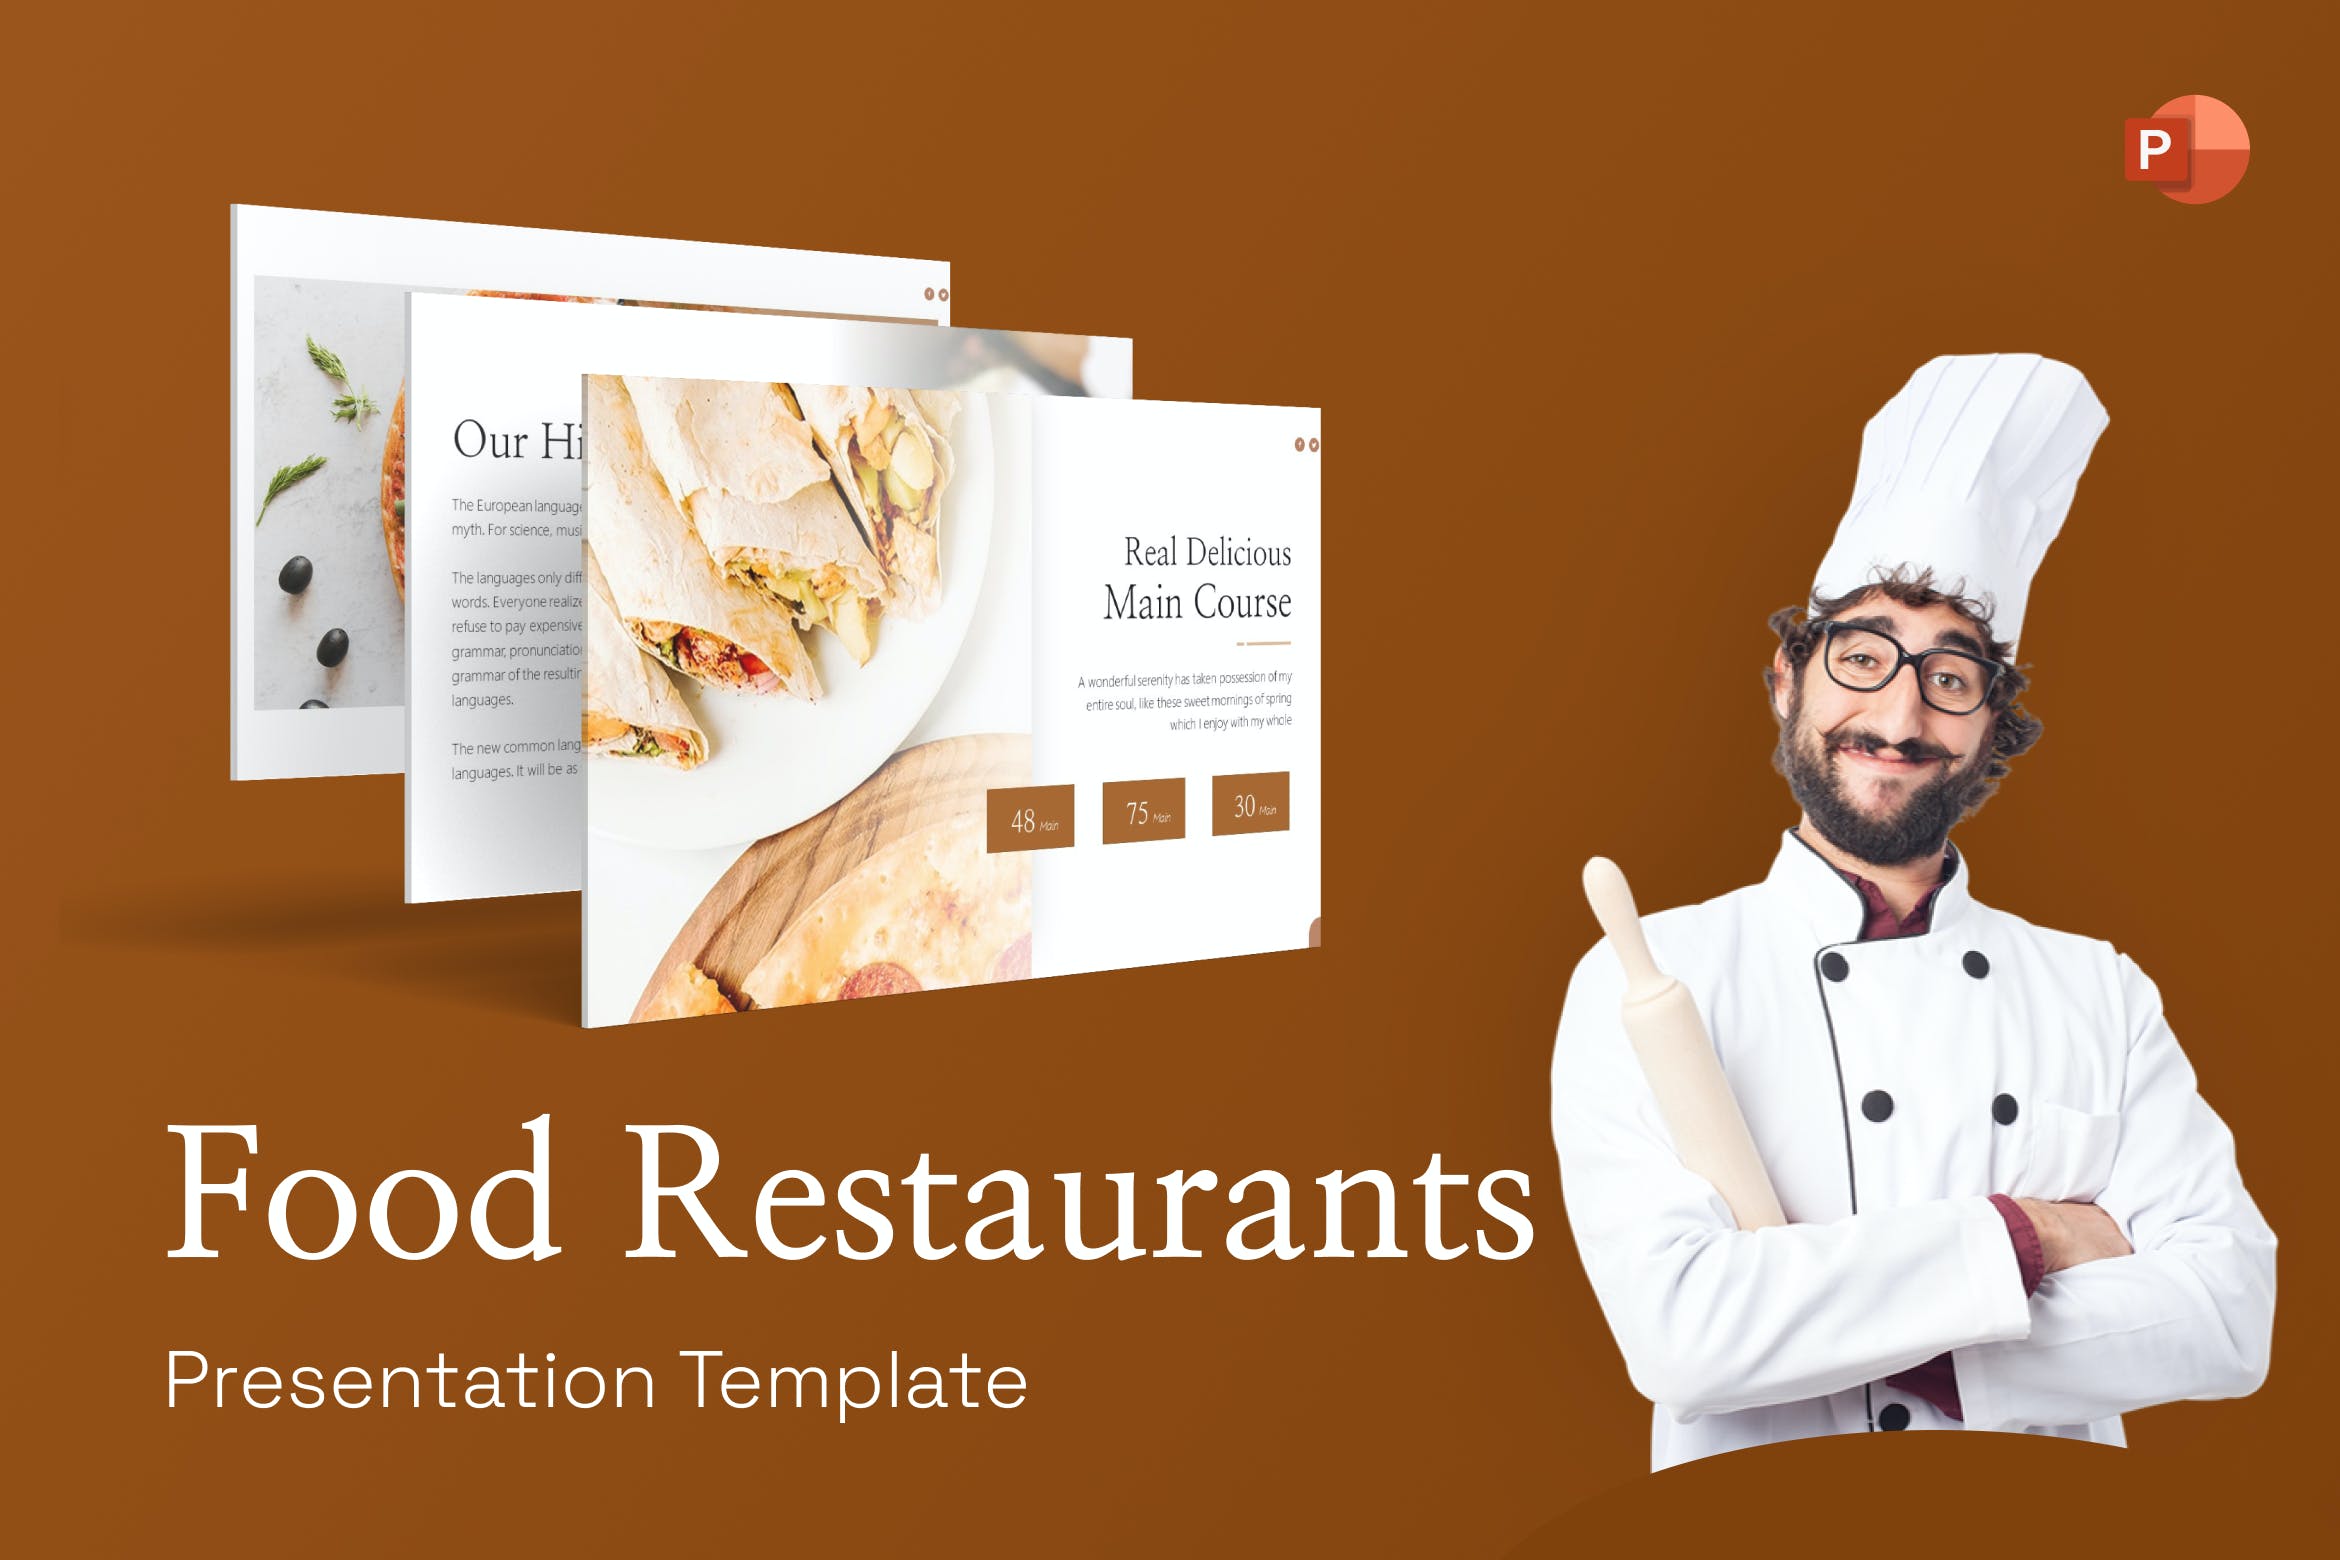 美食餐厅PPT幻灯片模板素材 Food Restaurant PowerPoint Template 幻灯图表 第1张